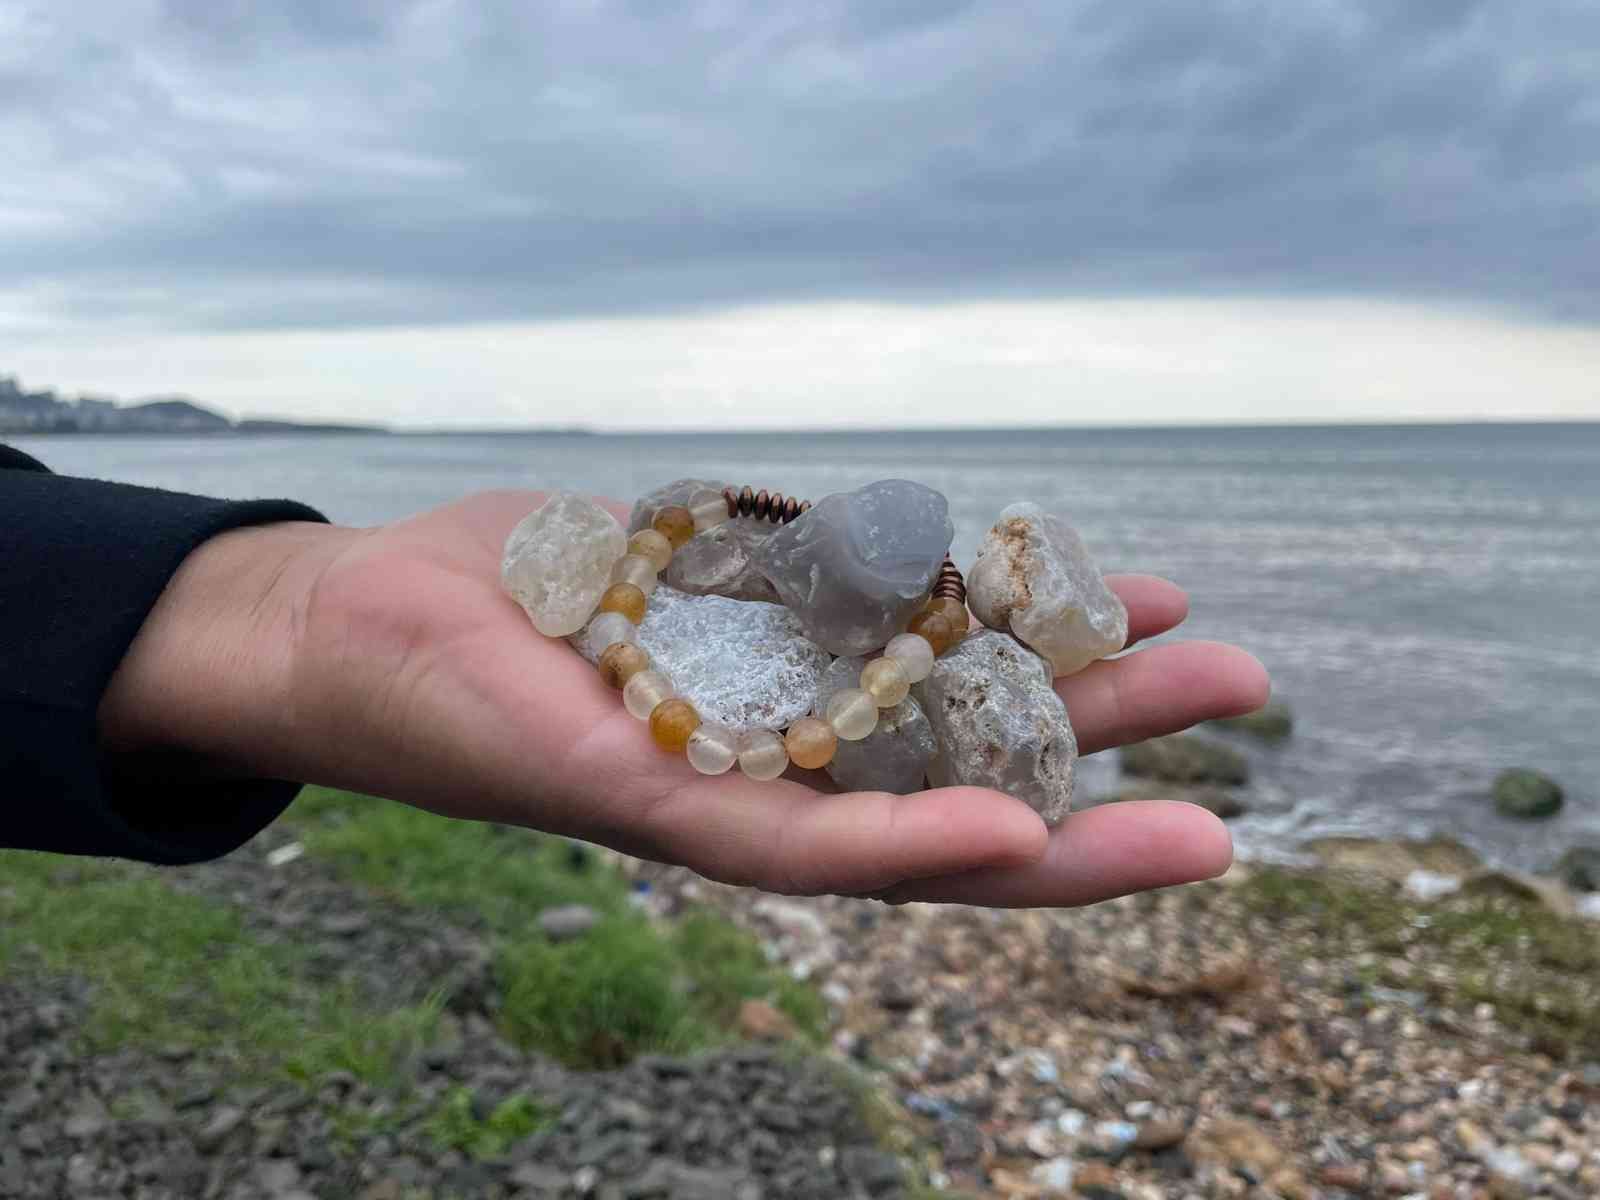 Fatsa sahilindeki değerli taşlar ilgi çekiyor
